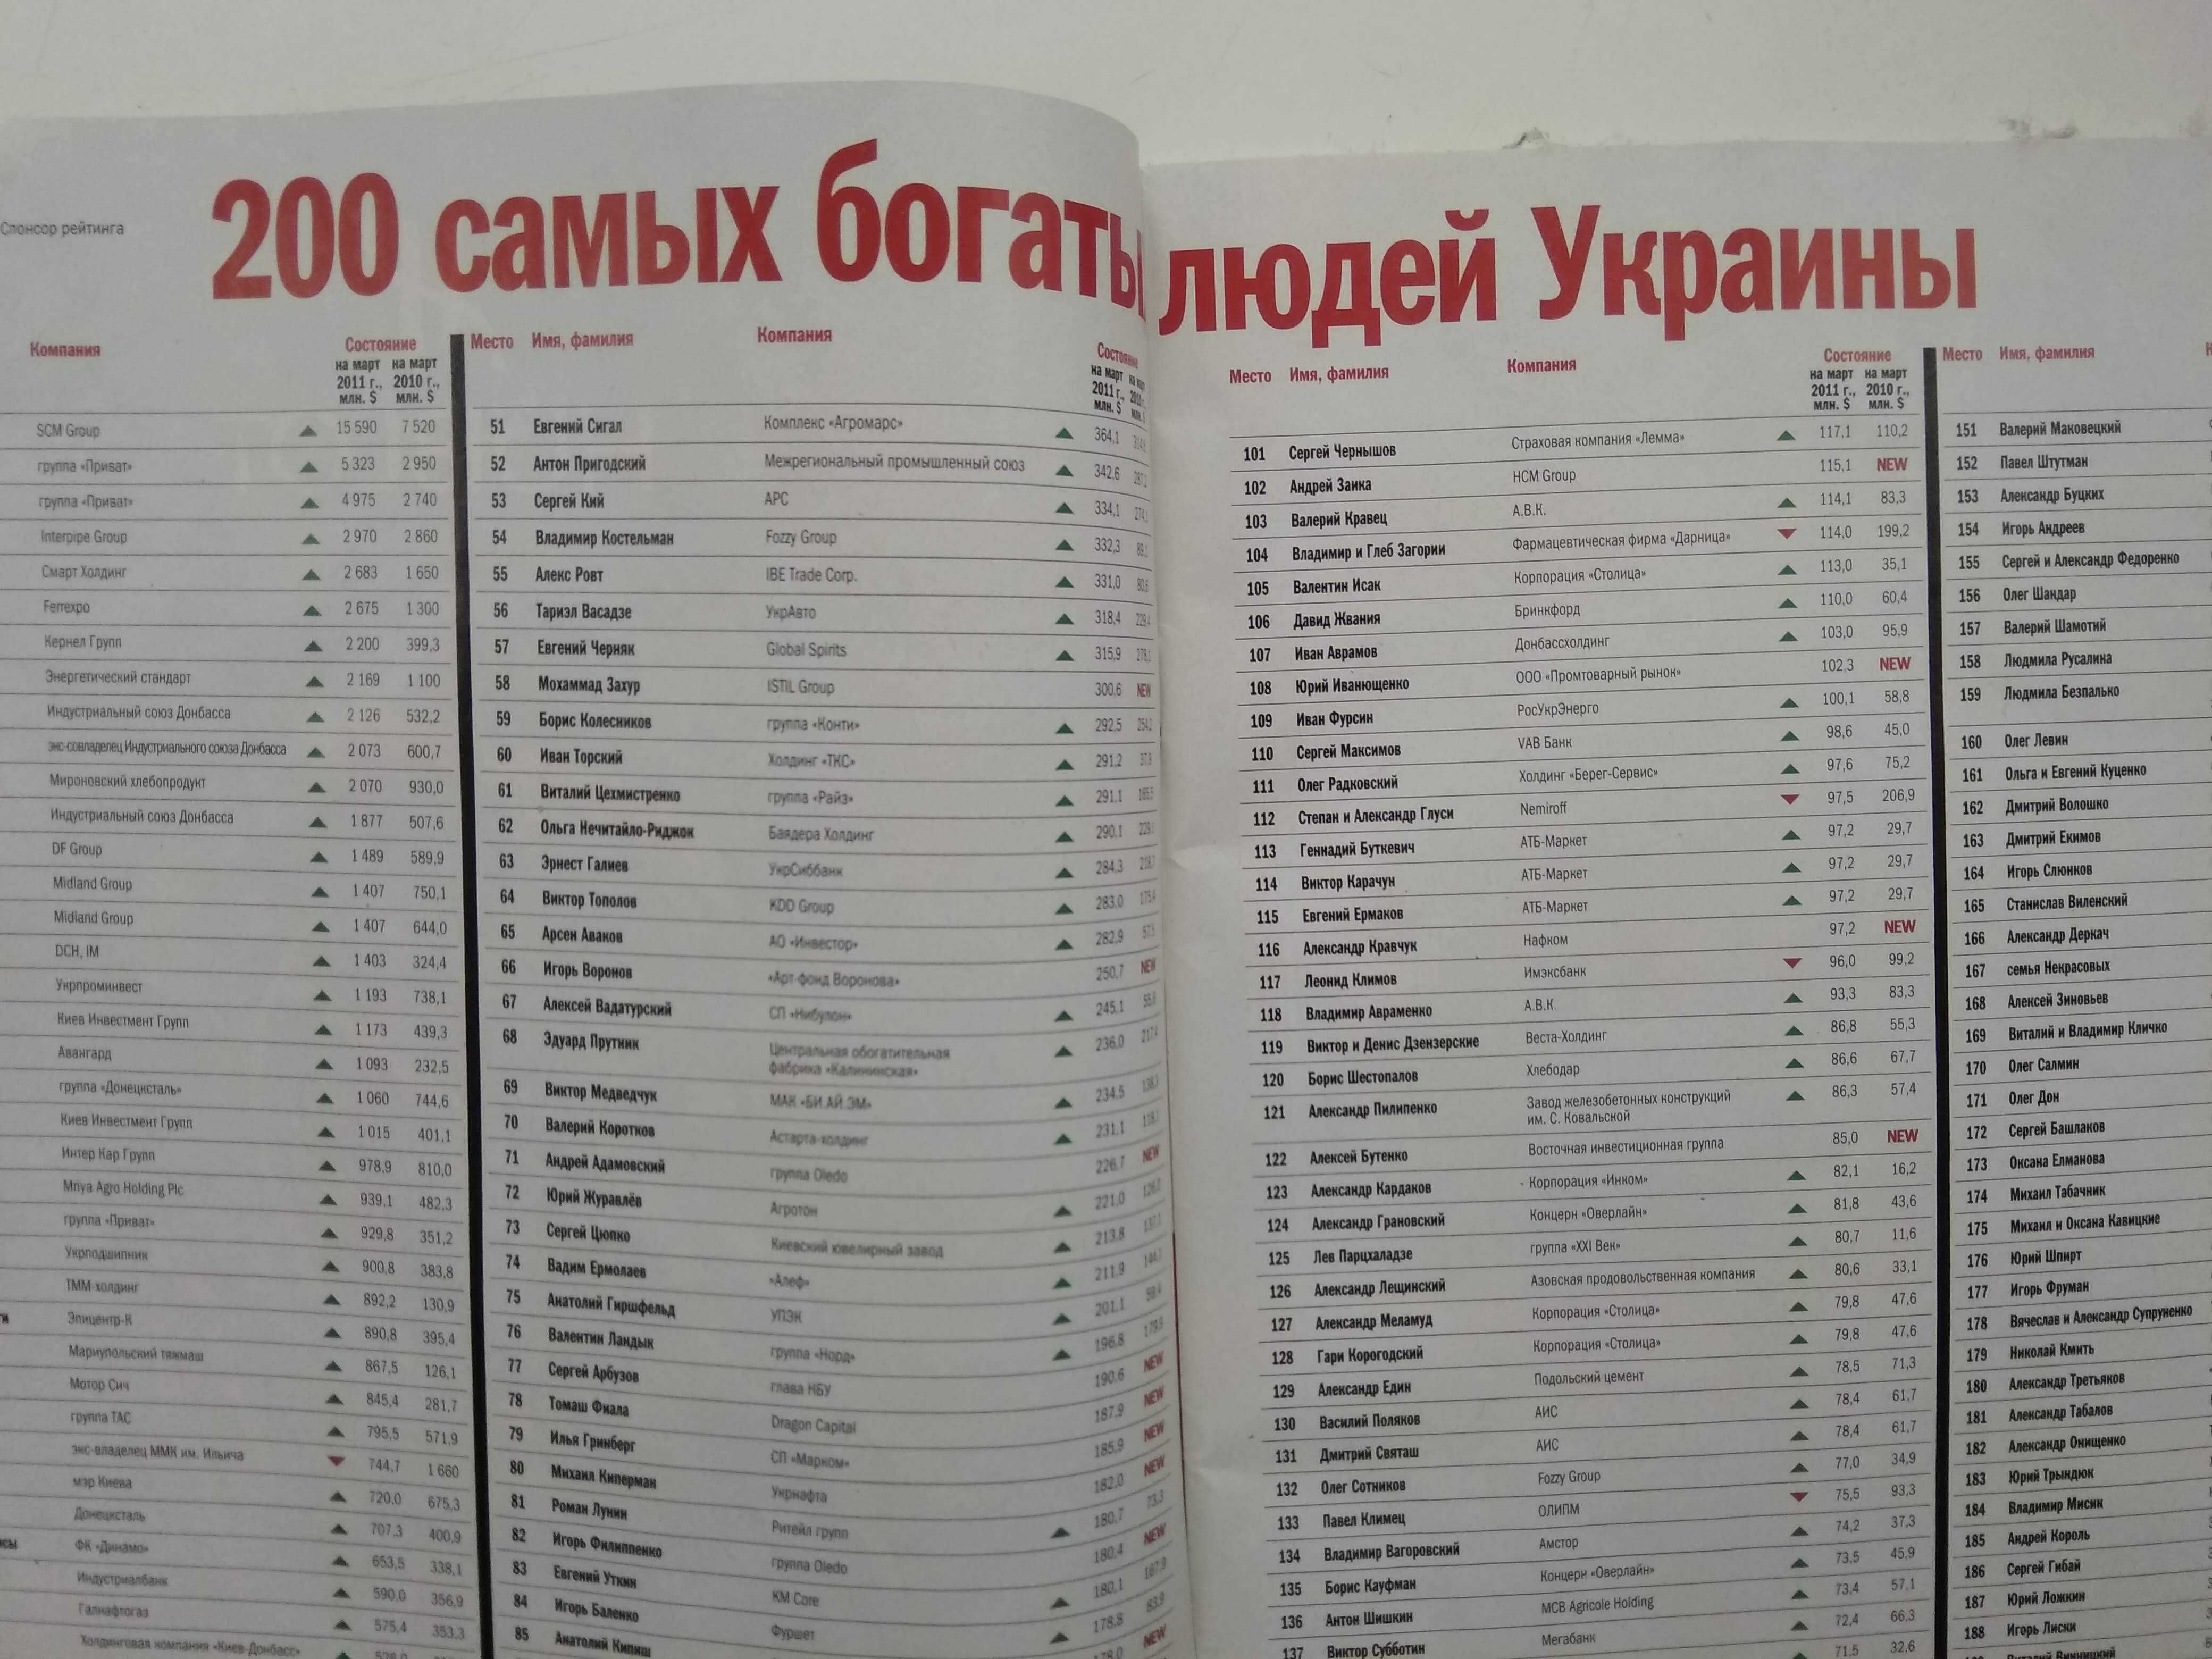 Журнал Фокус. рейтинг 200 самых богатых людей Украины 2011г.